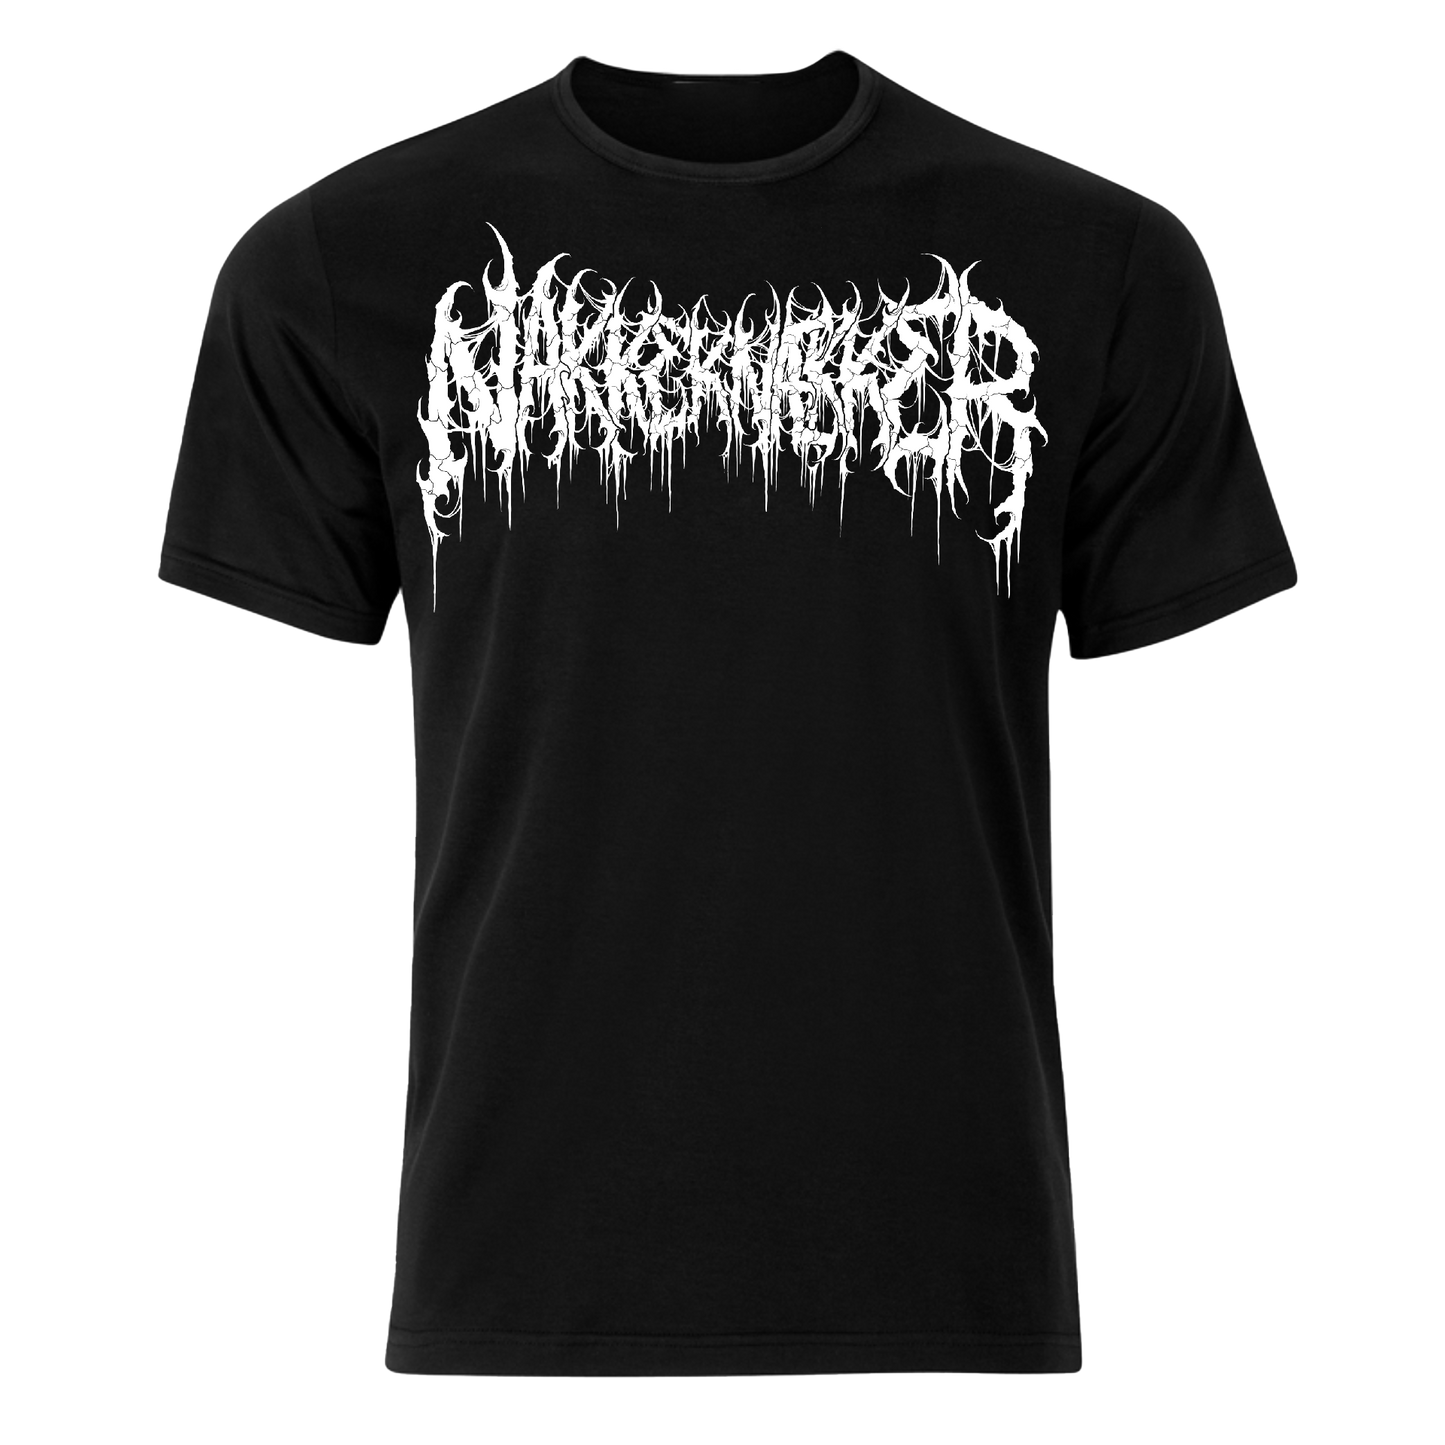 Nakkeknaekker logo t-shirt with NKR (black)